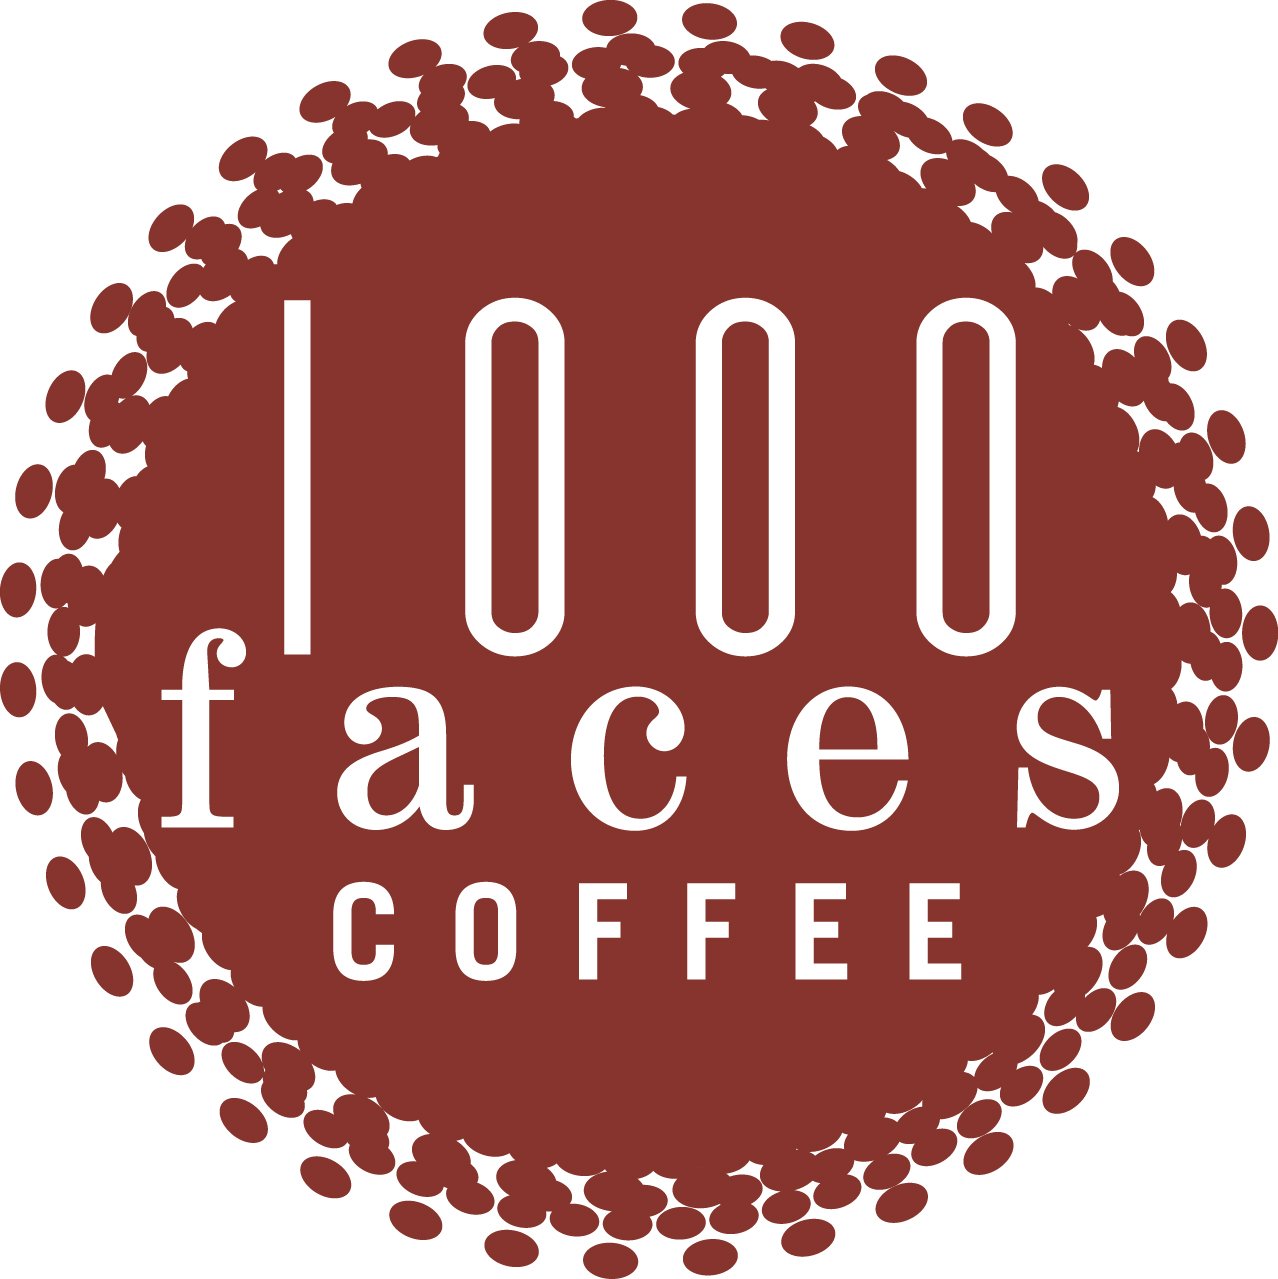 MiiR Tumbler — 1000 Faces Coffee